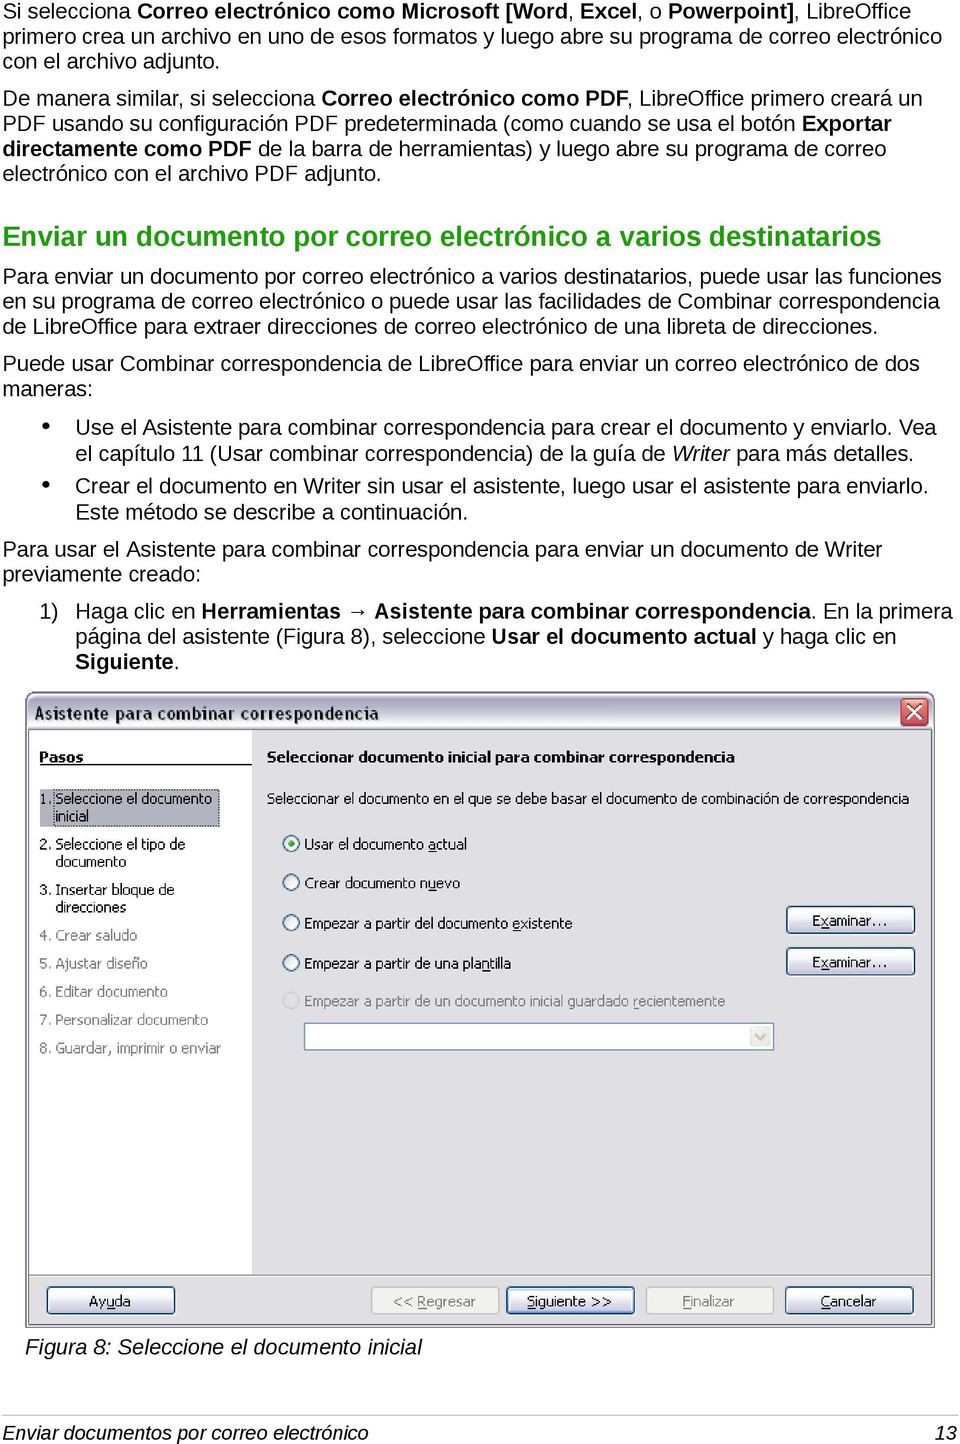 De manera similar, si selecciona Correo electrónico como PDF, LibreOffice primero creará un PDF usando su configuración PDF predeterminada (como cuando se usa el botón Exportar directamente como PDF